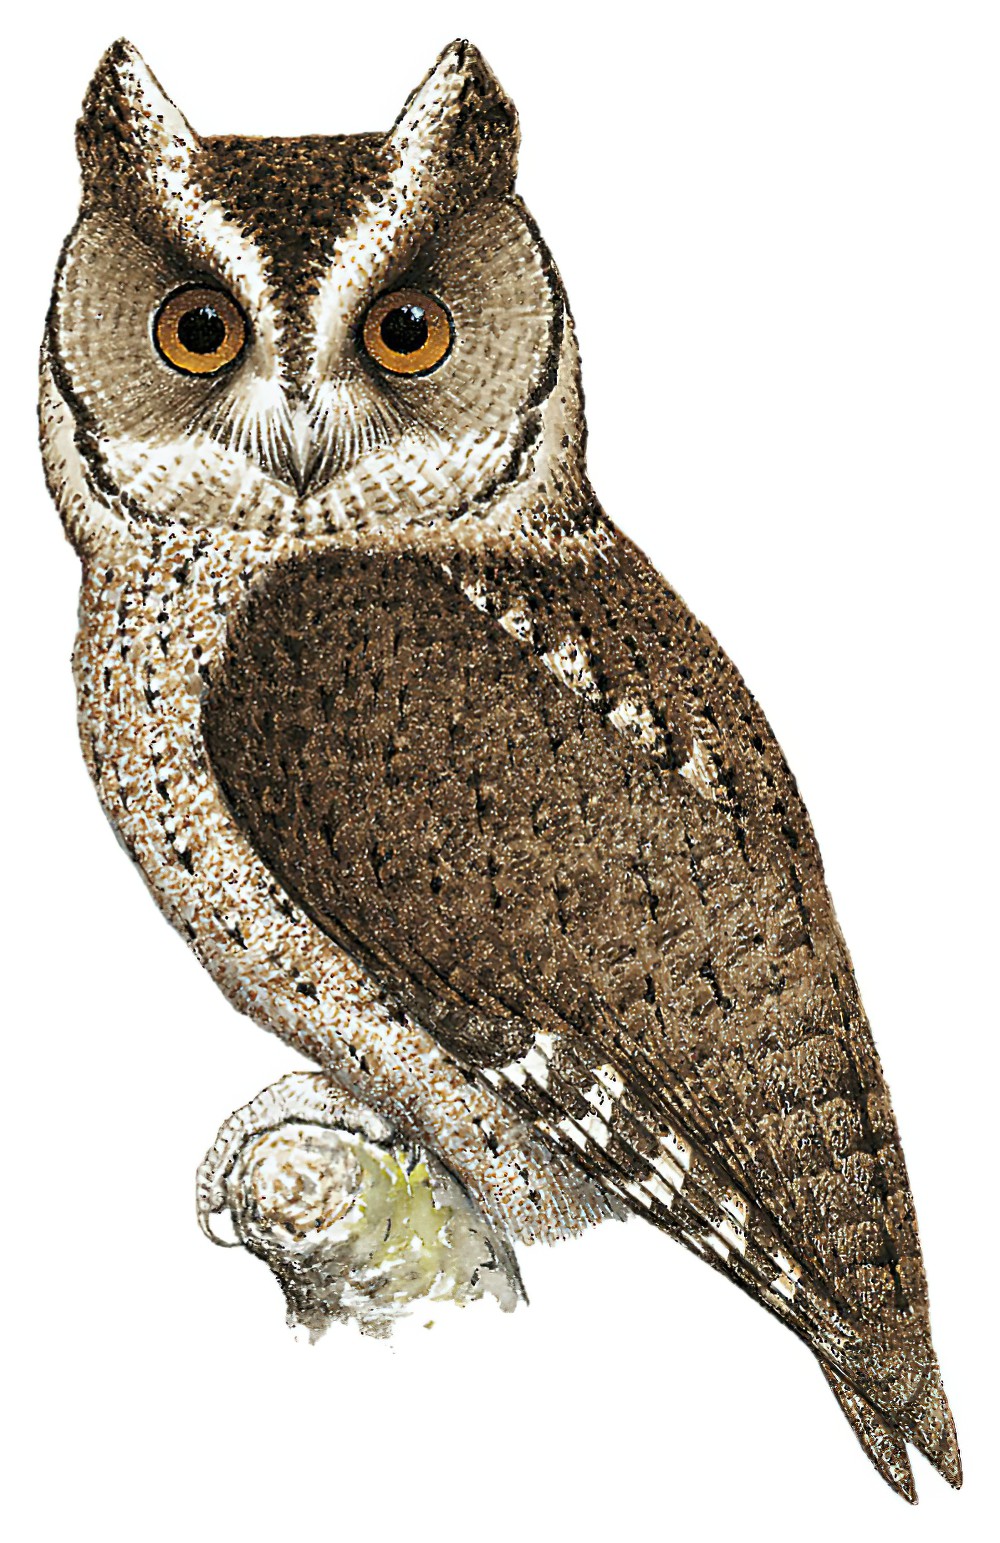 Philippine Scops-Owl / Otus megalotis